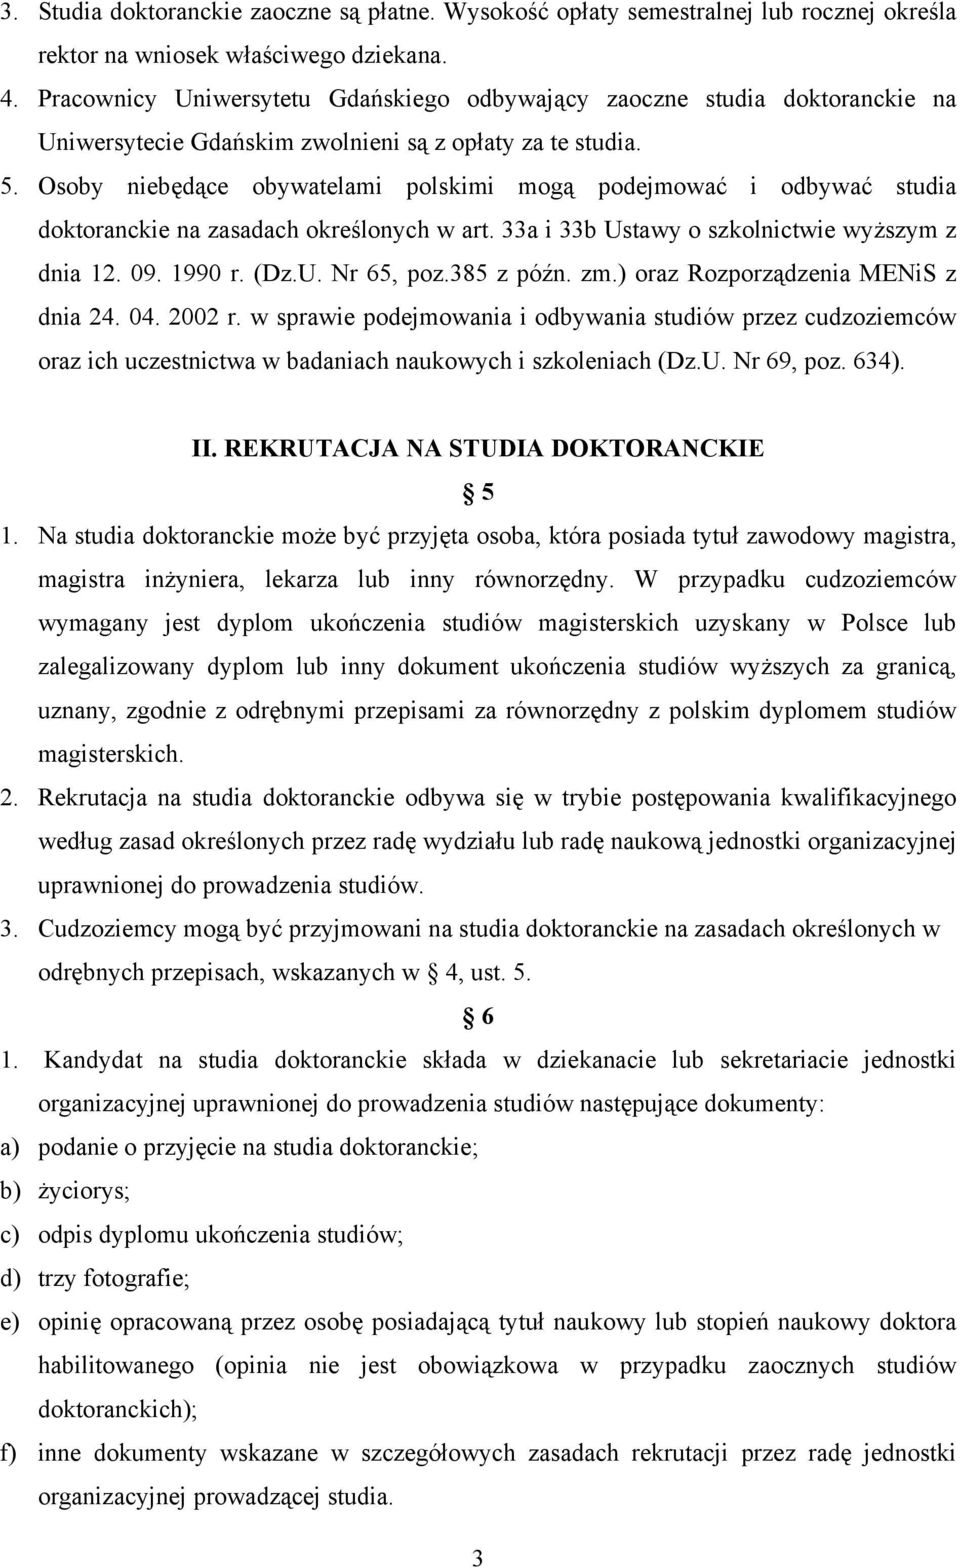 Osoby niebędące obywatelami polskimi mogą podejmować i odbywać studia doktoranckie na zasadach określonych w art. 33a i 33b Ustawy o szkolnictwie wyższym z dnia 12. 09. 1990 r. (Dz.U. Nr 65, poz.